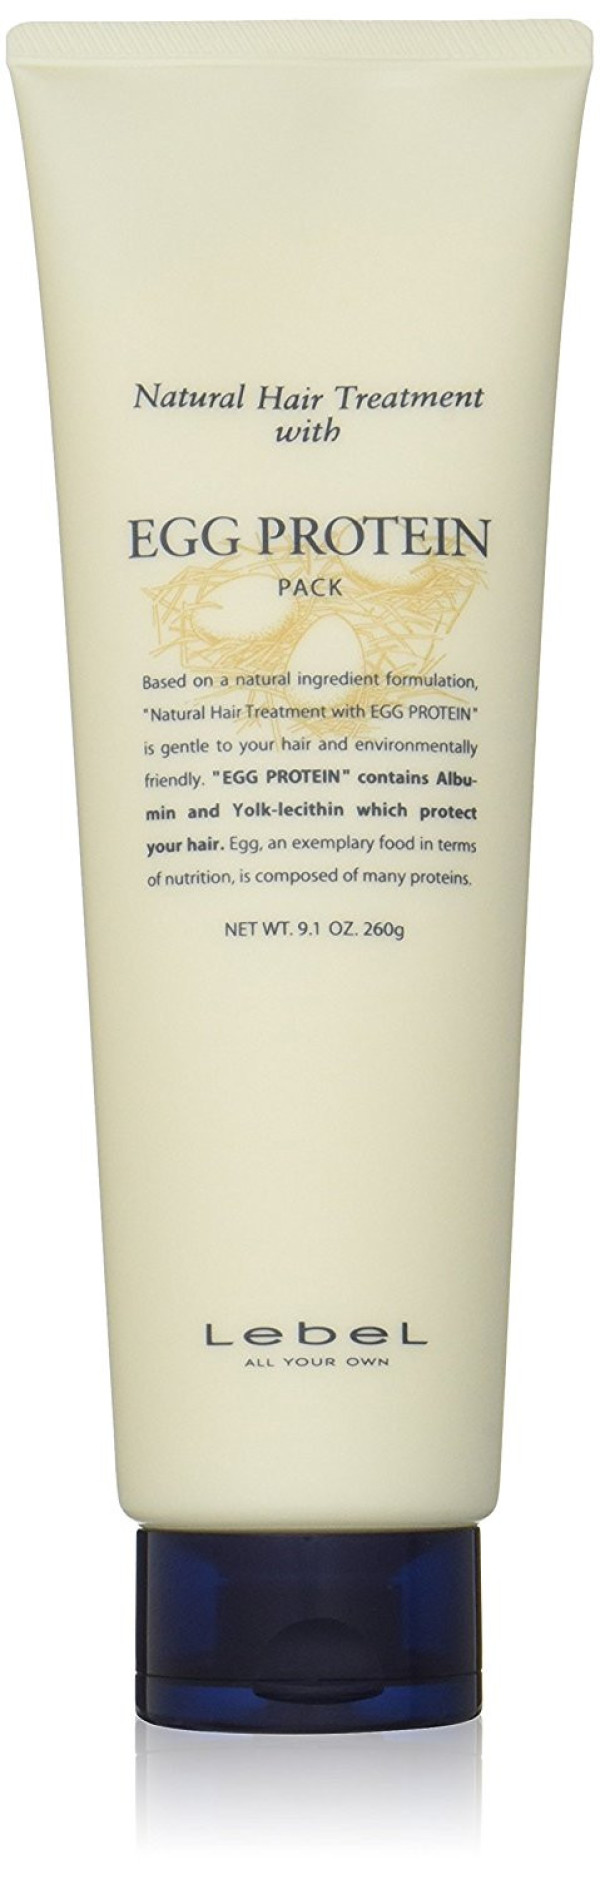 Питательная маска Lebel Natural Hair Treatment Egg Protein для поврежденных, сухих и слабых волос